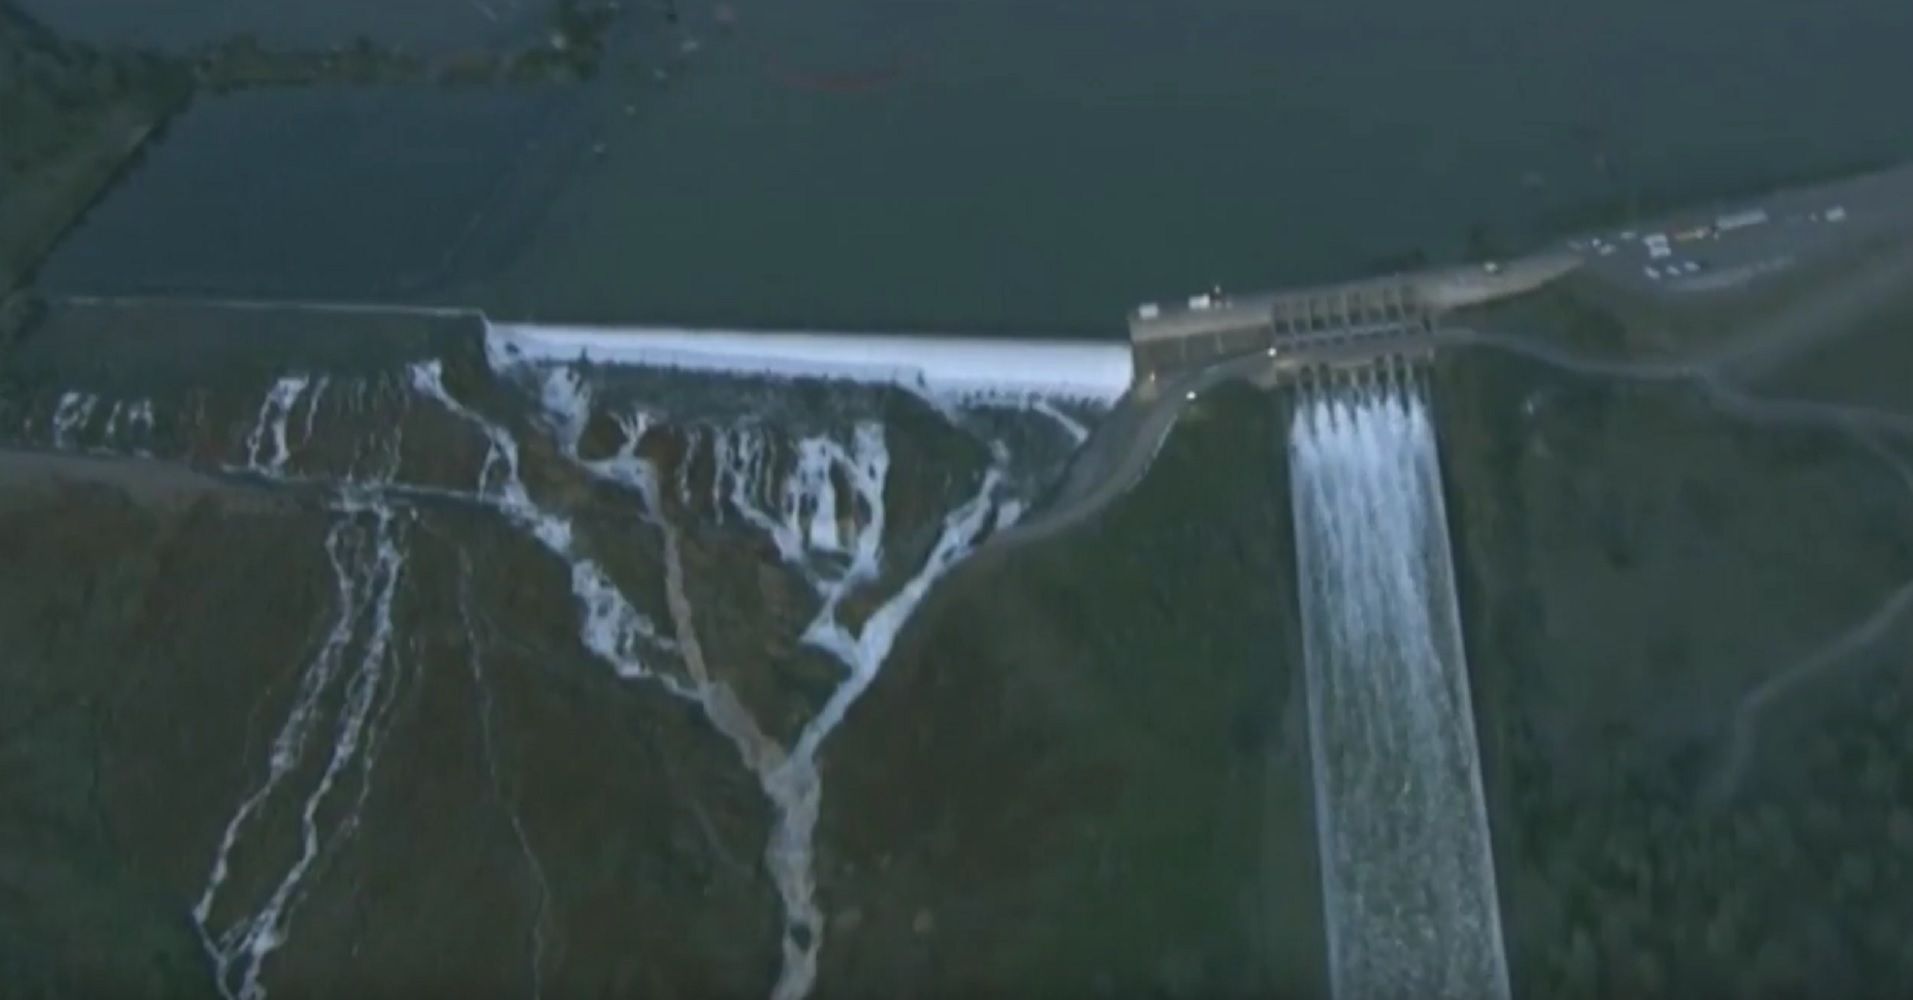 200.000 evacuados en California por riesgo de rotura en una presa